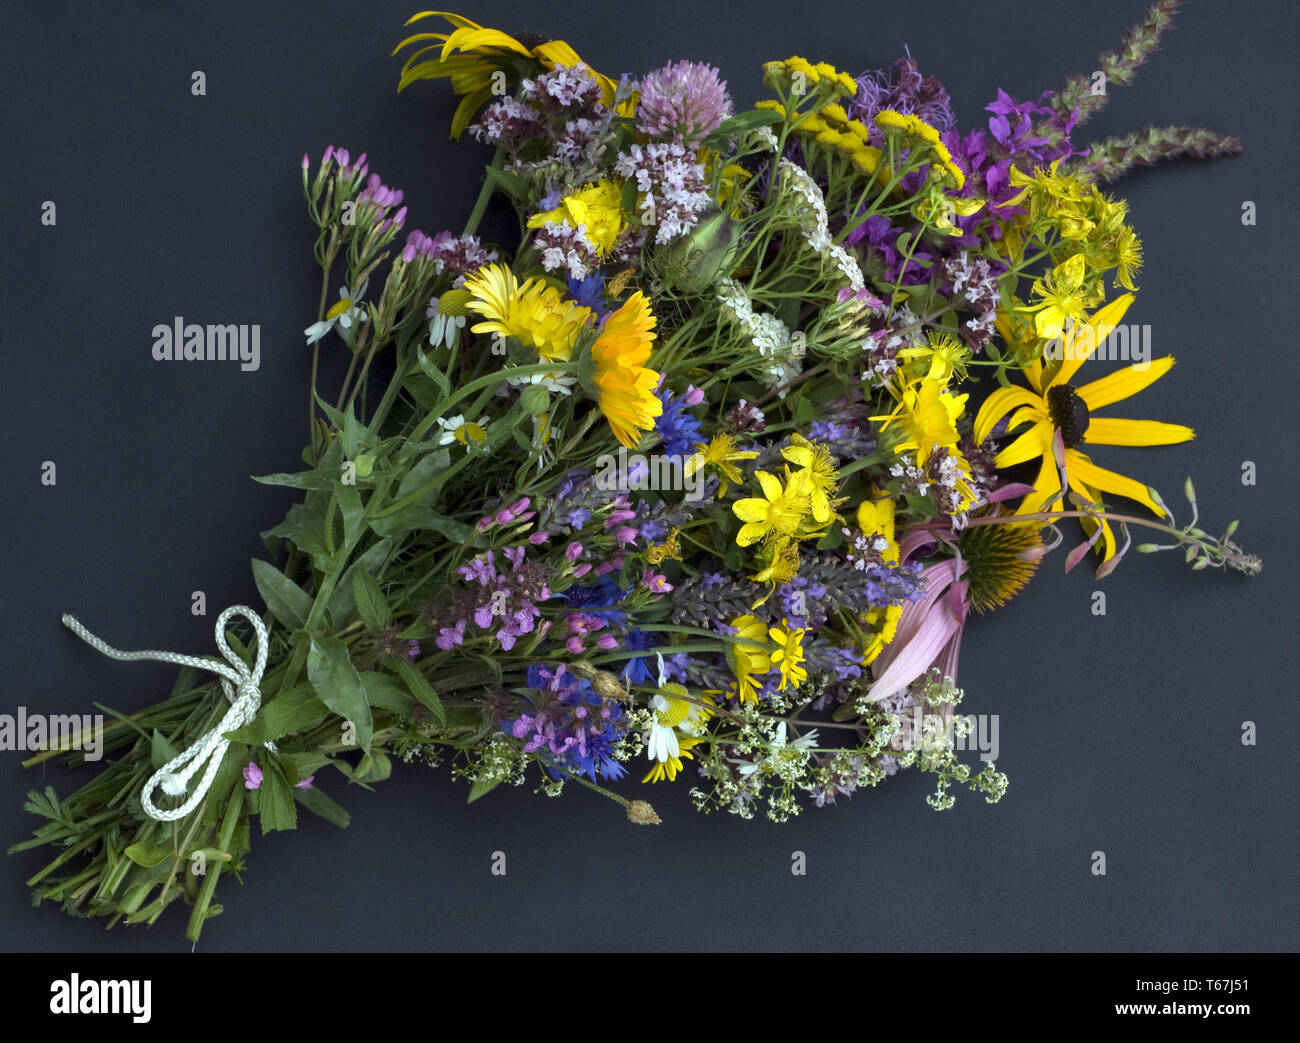 officinal plants, medical plants, arrangement Stock Photo